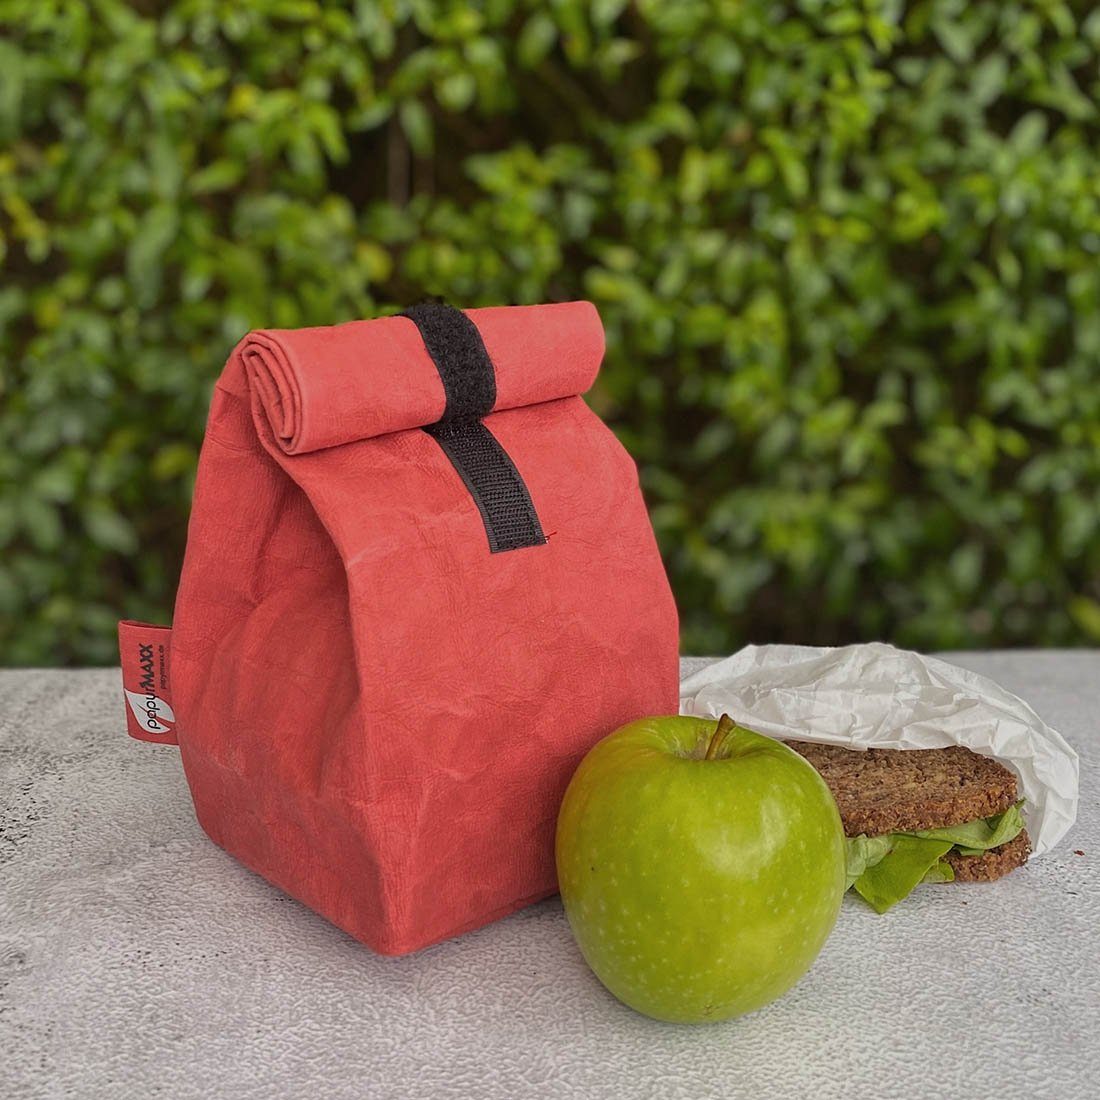 & mit Trend Klettverschluss, Lunchbox mint wie Style Rolltop-Lunchbag aber aus Leder LK sieht keins. ist